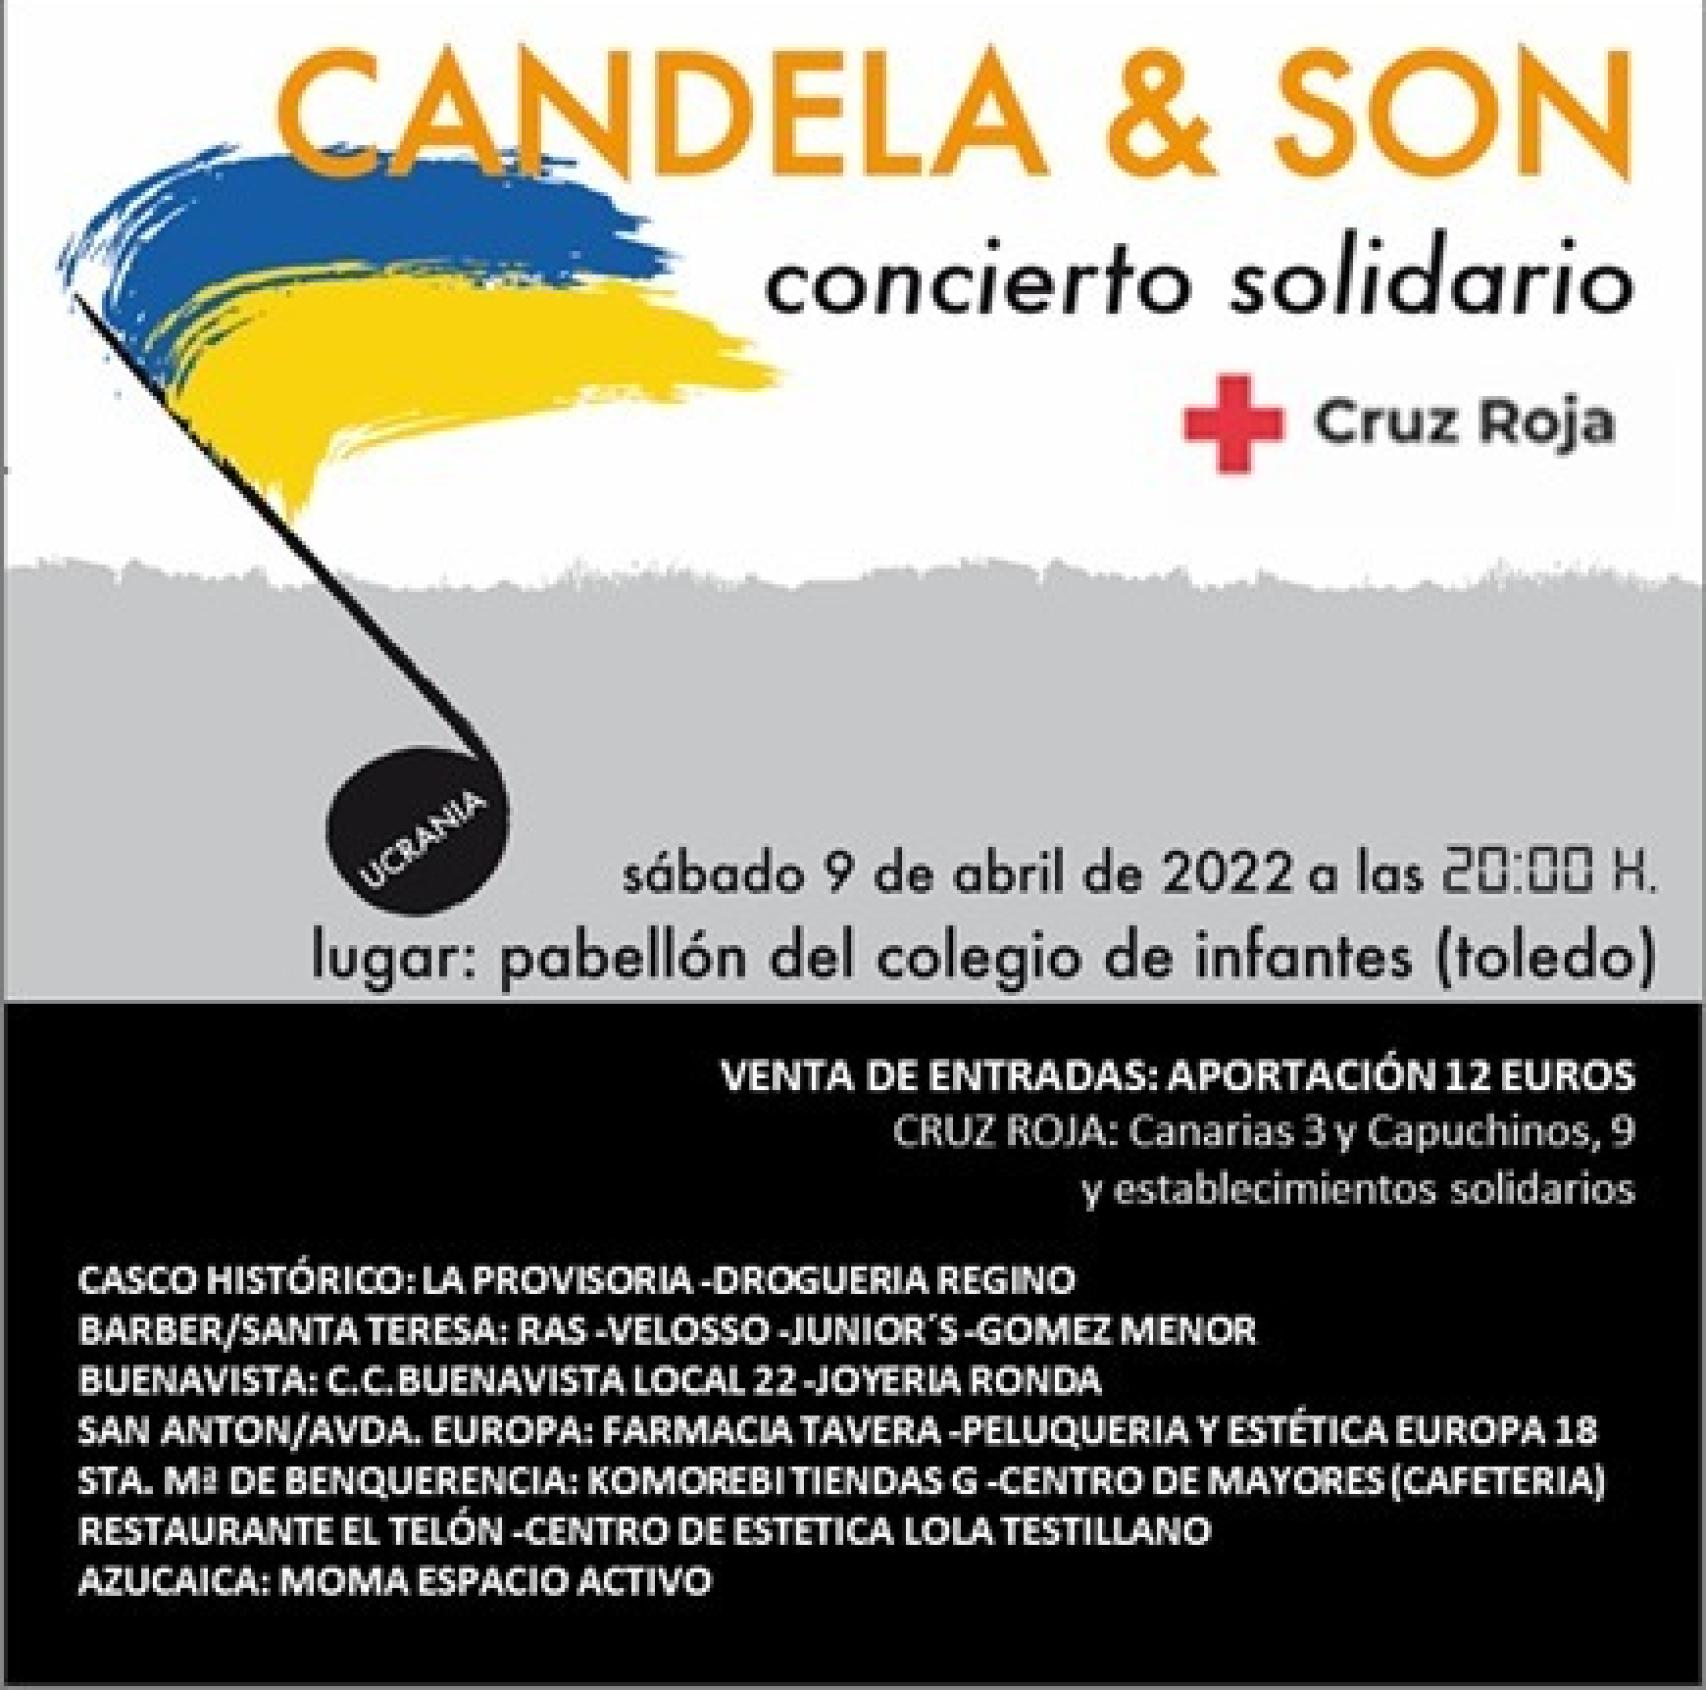 Cartel del concierto solidario de Candela & Son